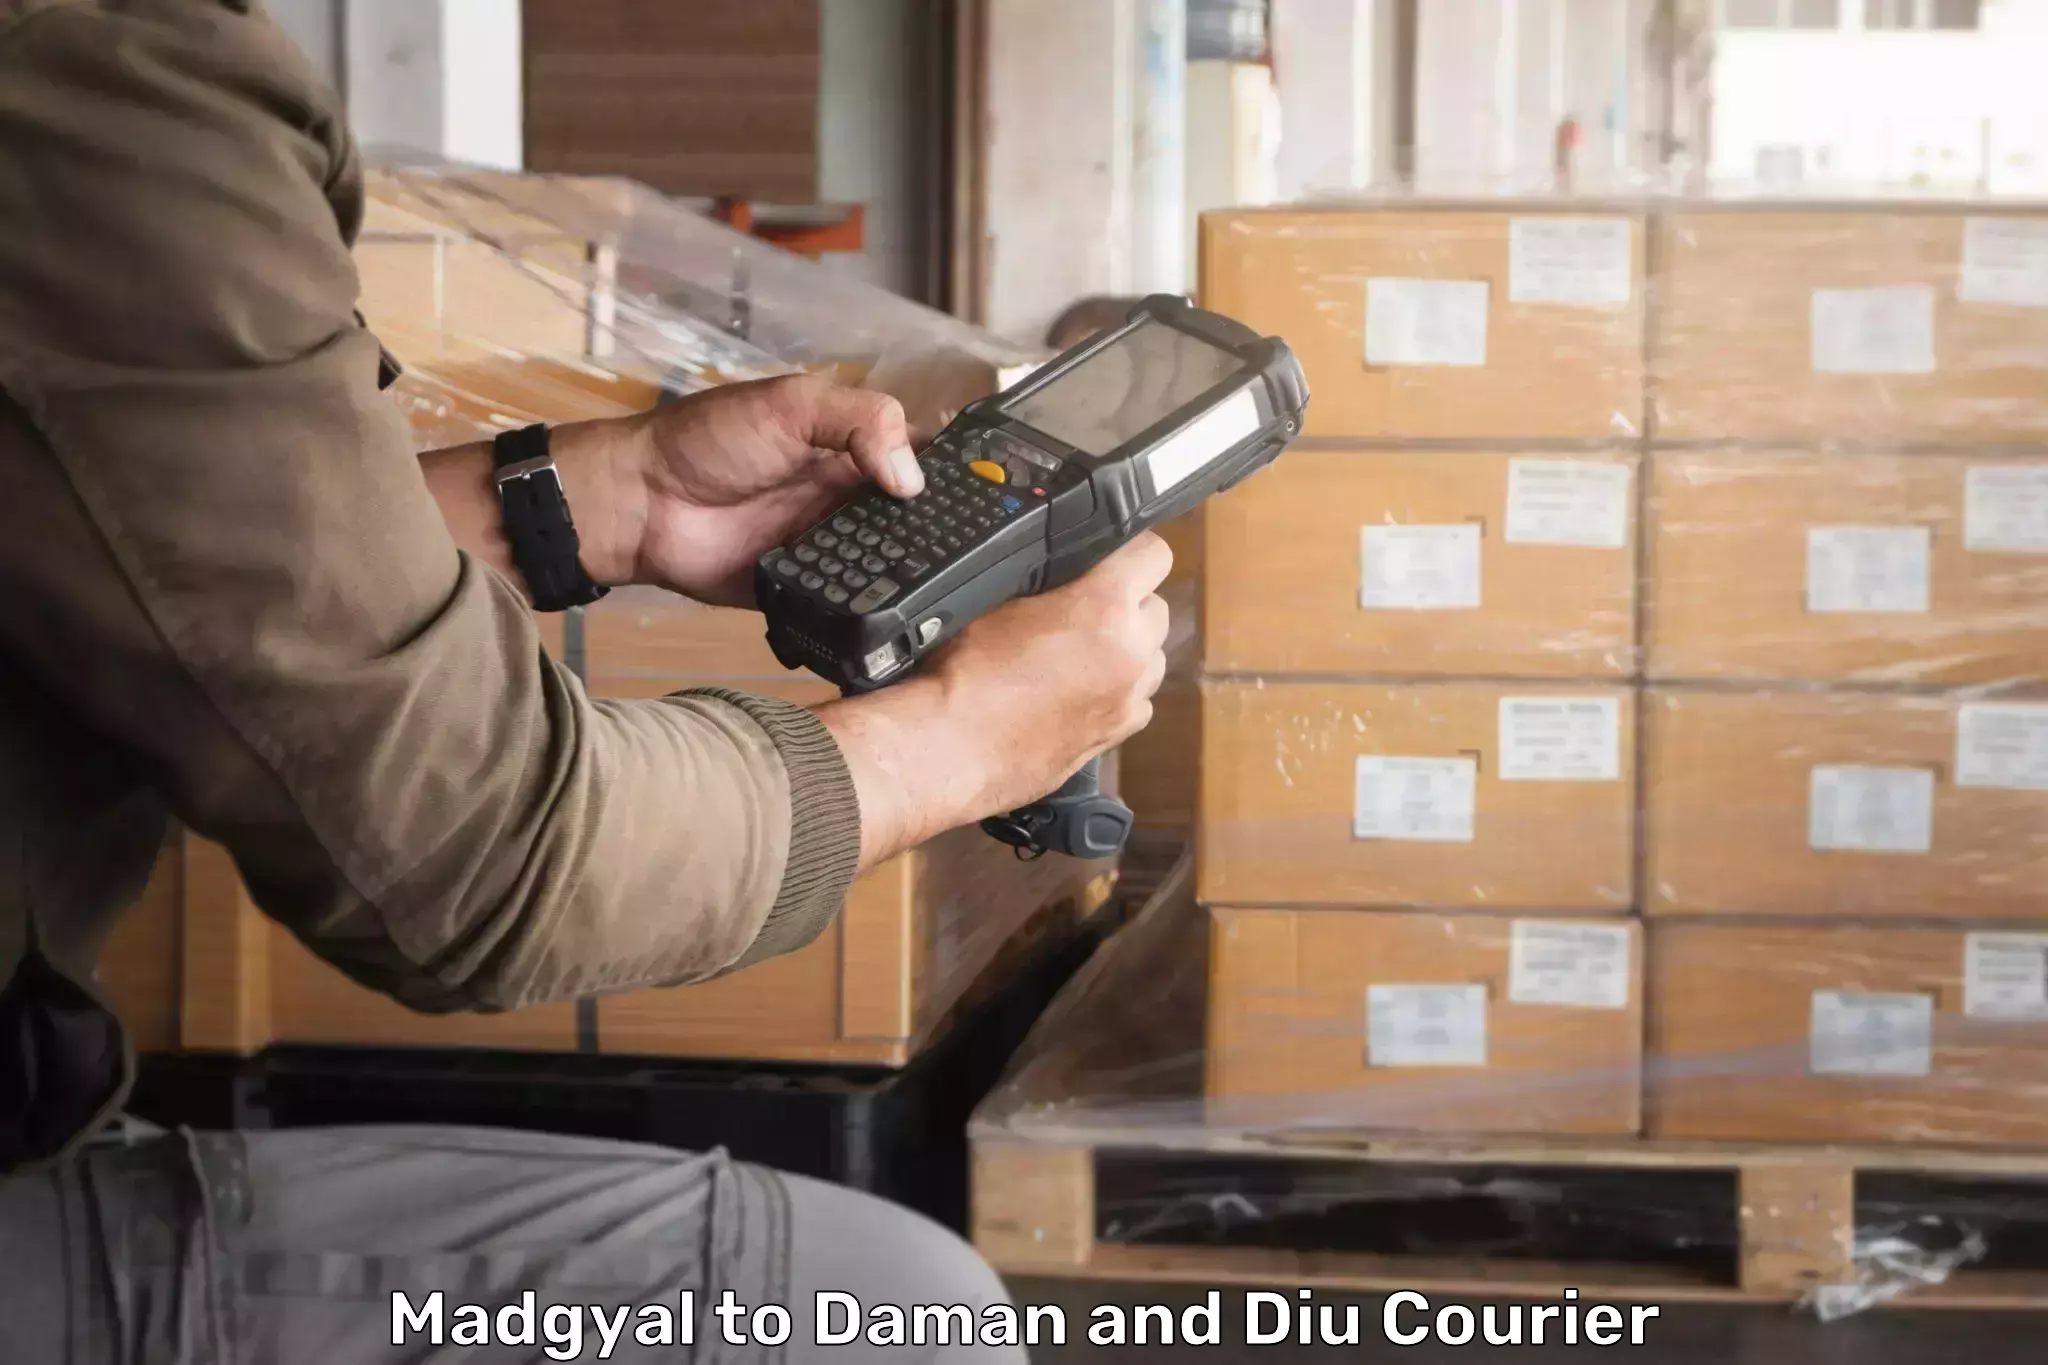 Express logistics service Madgyal to Daman